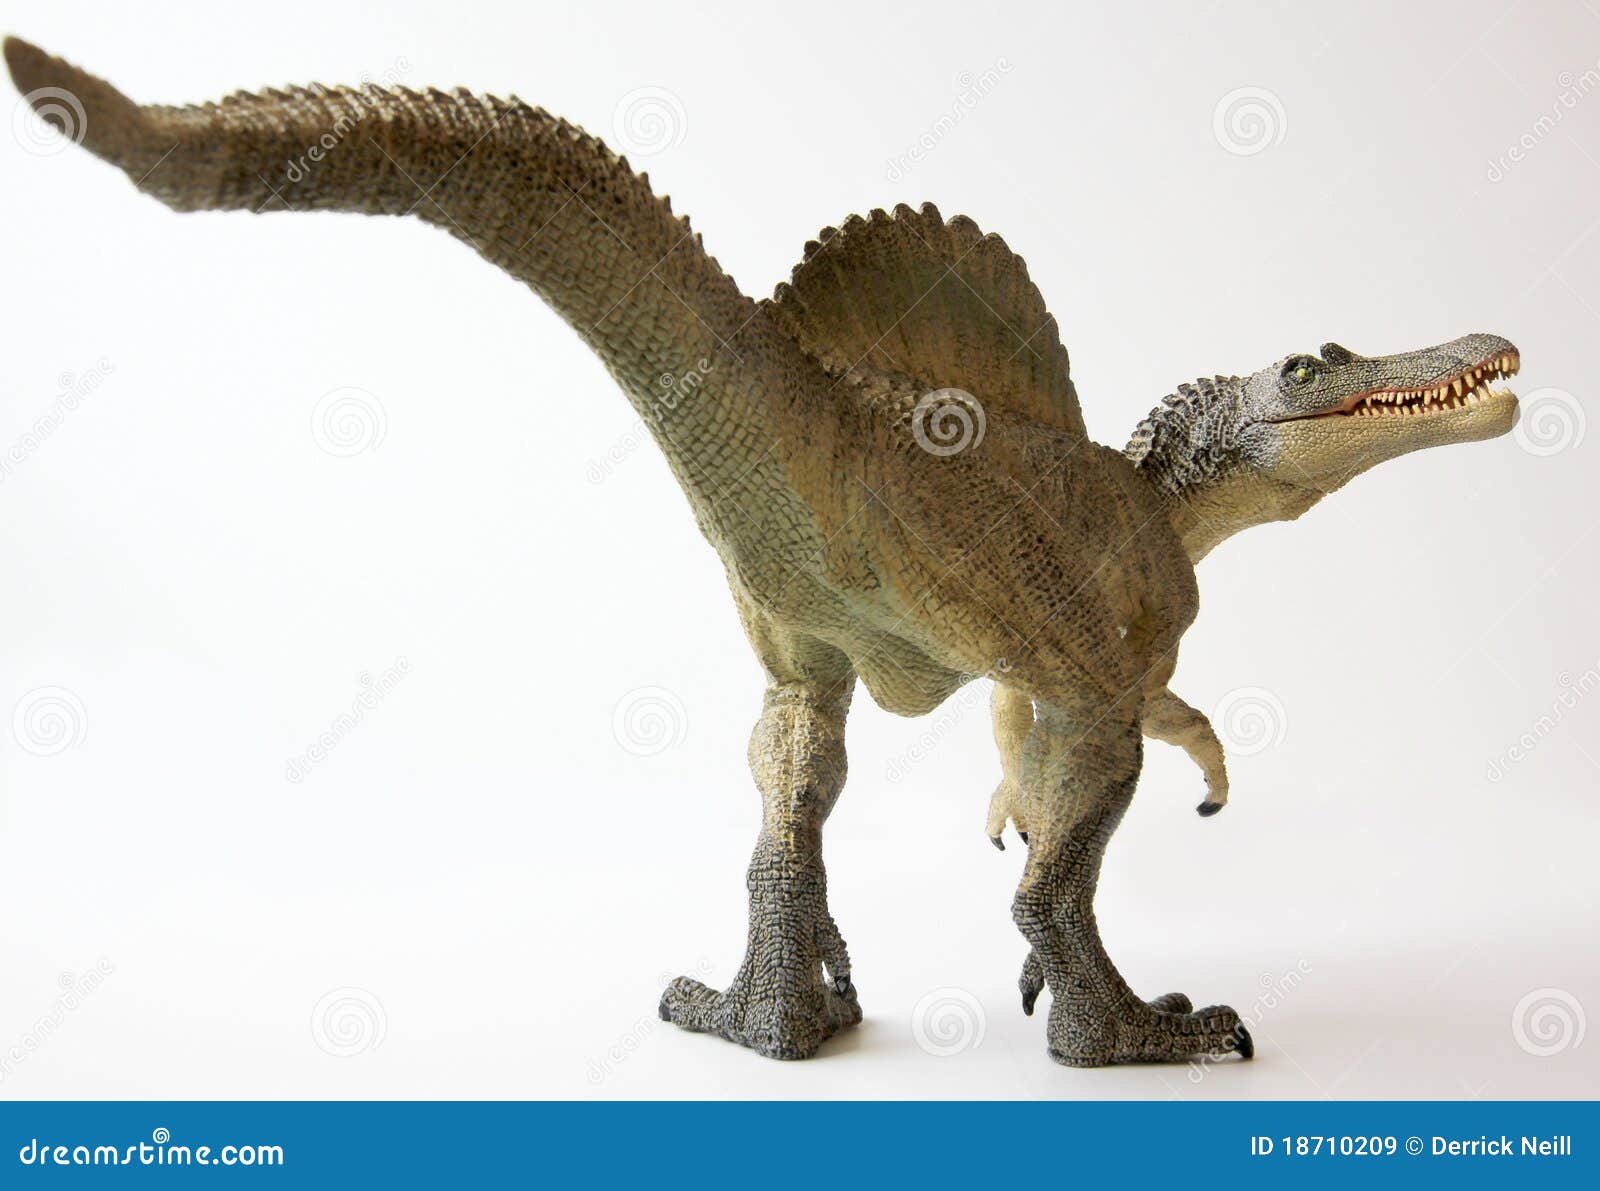 a spinosaurus dinosaur with gaping jaws